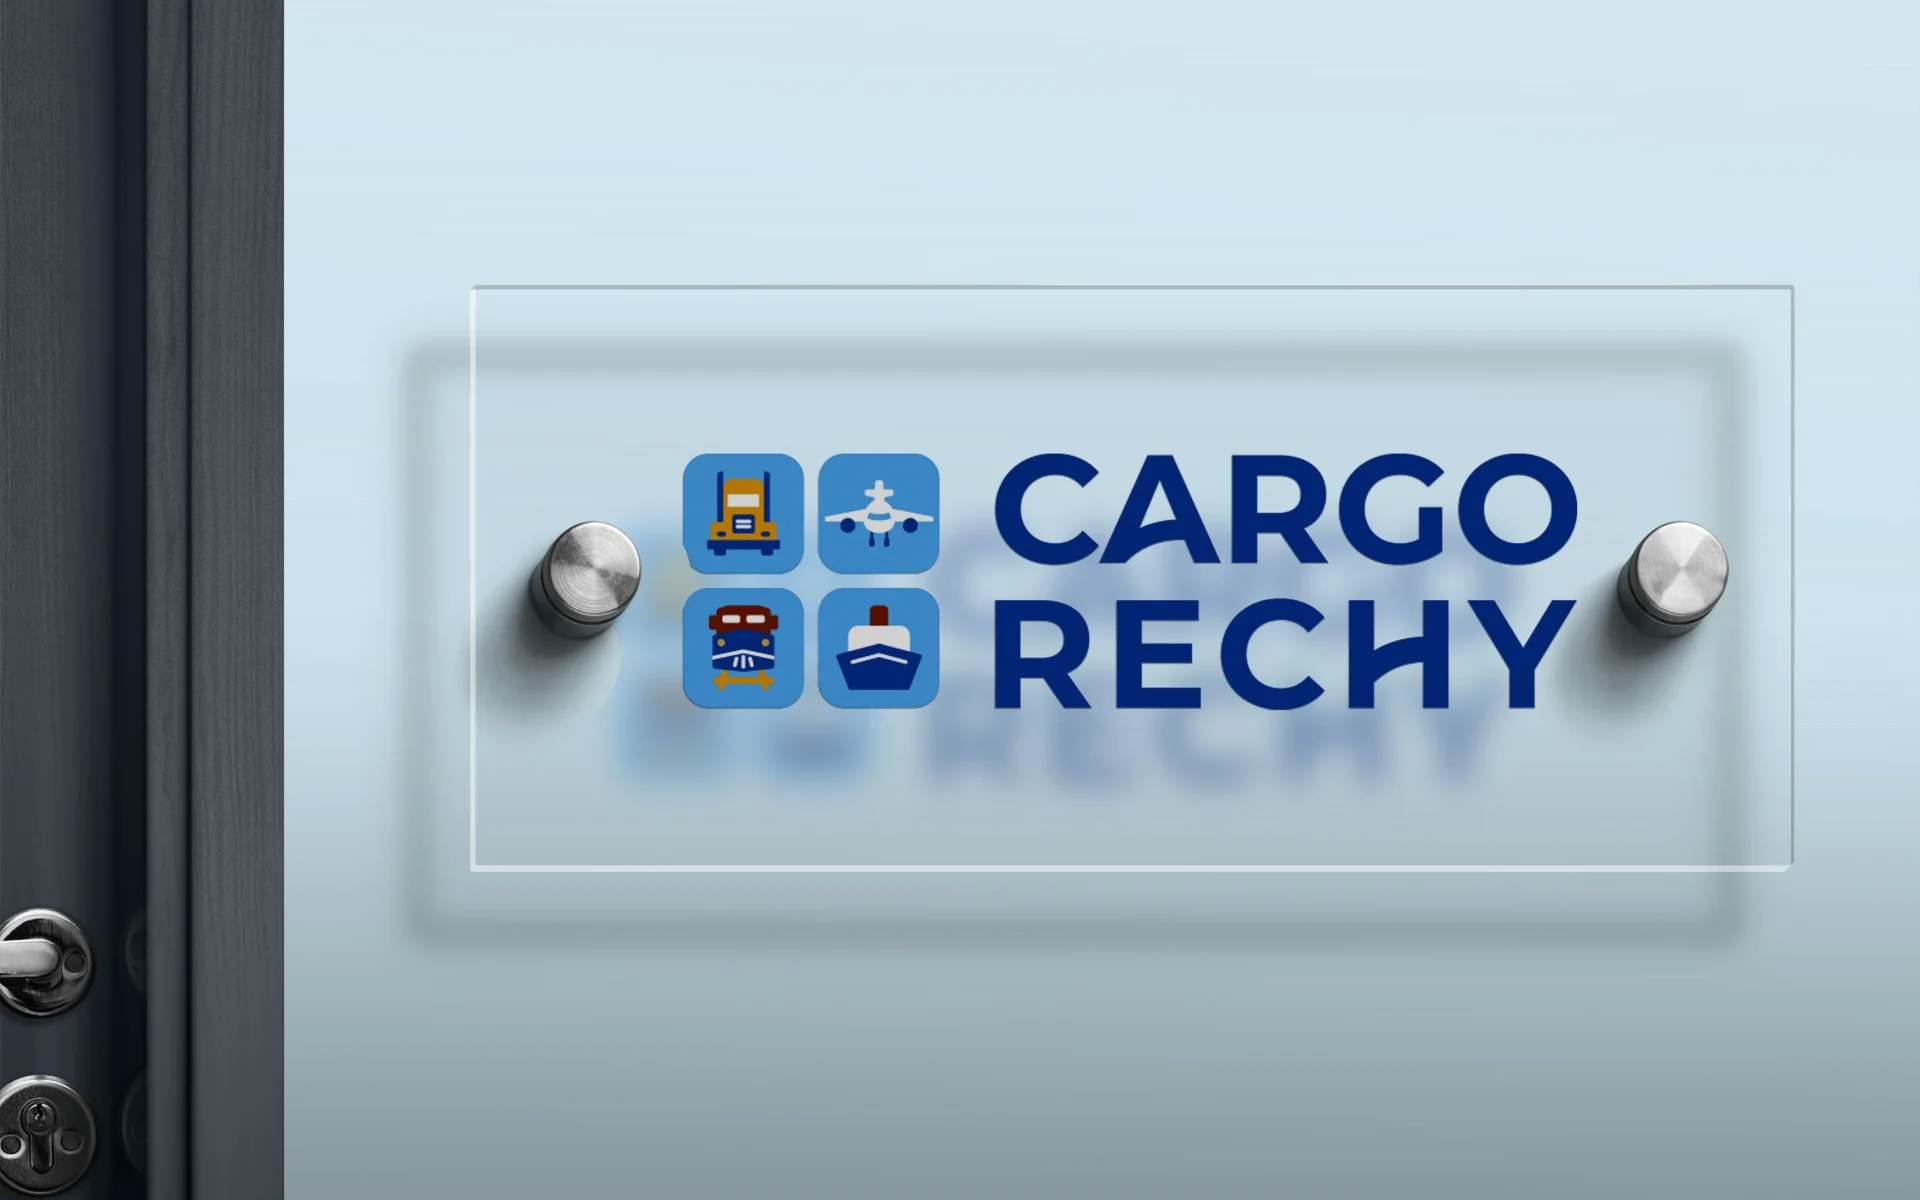 Cargo Rechy 4